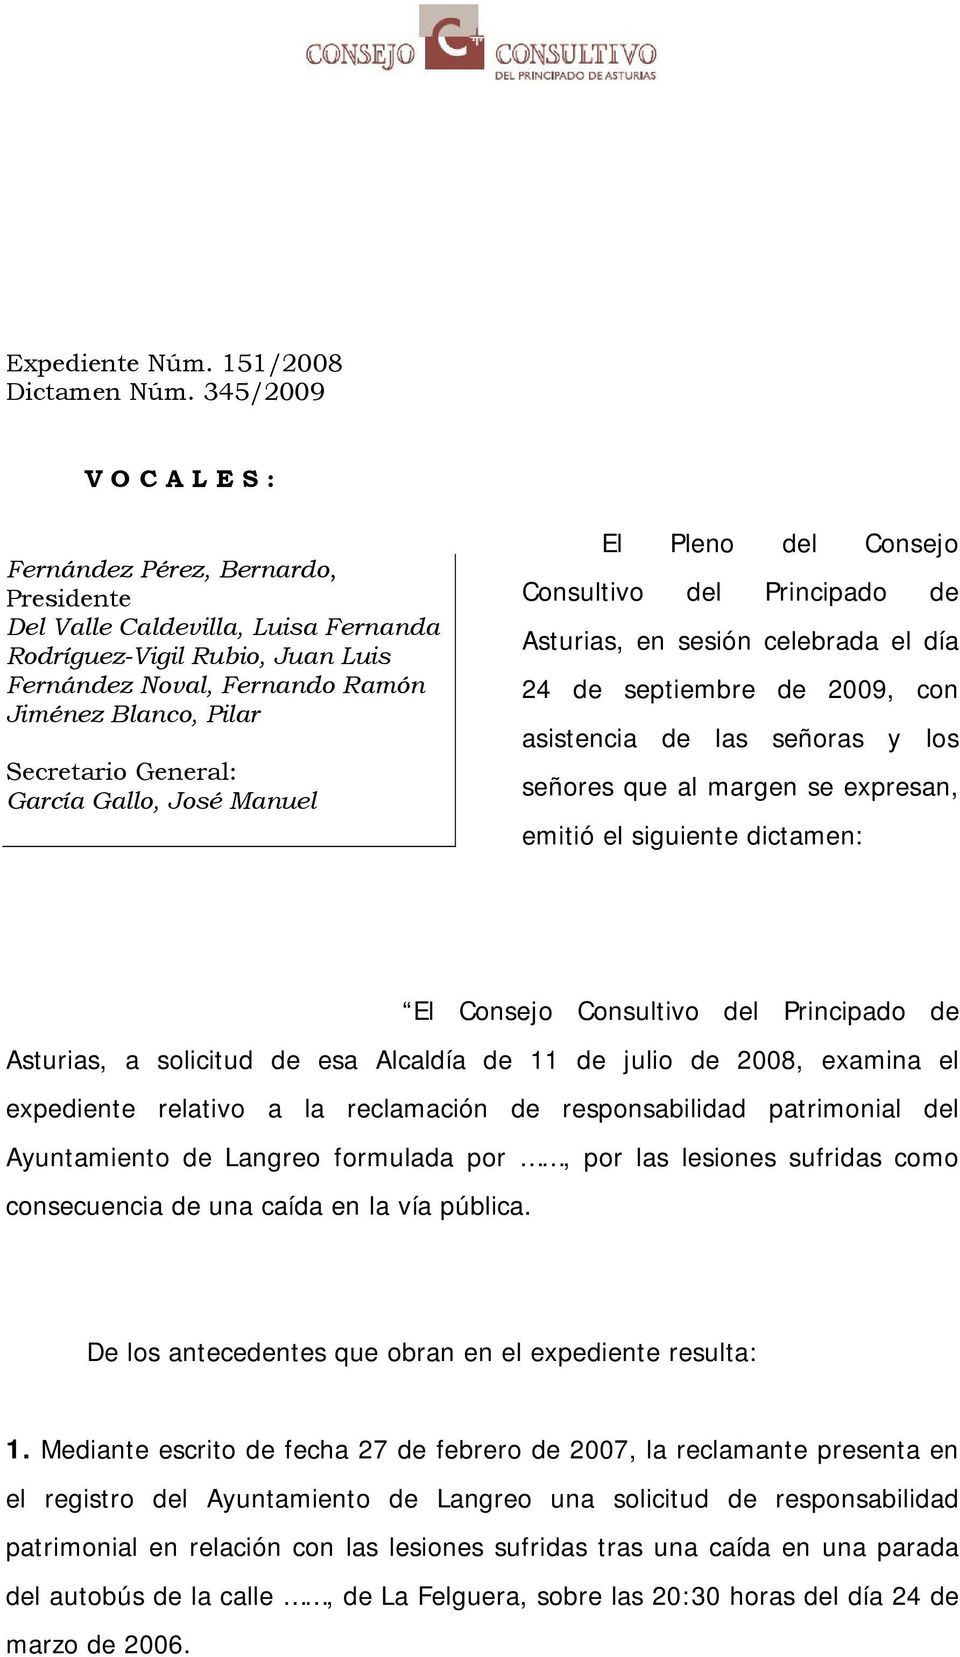 General: García Gallo, José Manuel El Pleno del Consejo Consultivo del Principado de Asturias, en sesión celebrada el día 24 de septiembre de 2009, con asistencia de las señoras y los señores que al